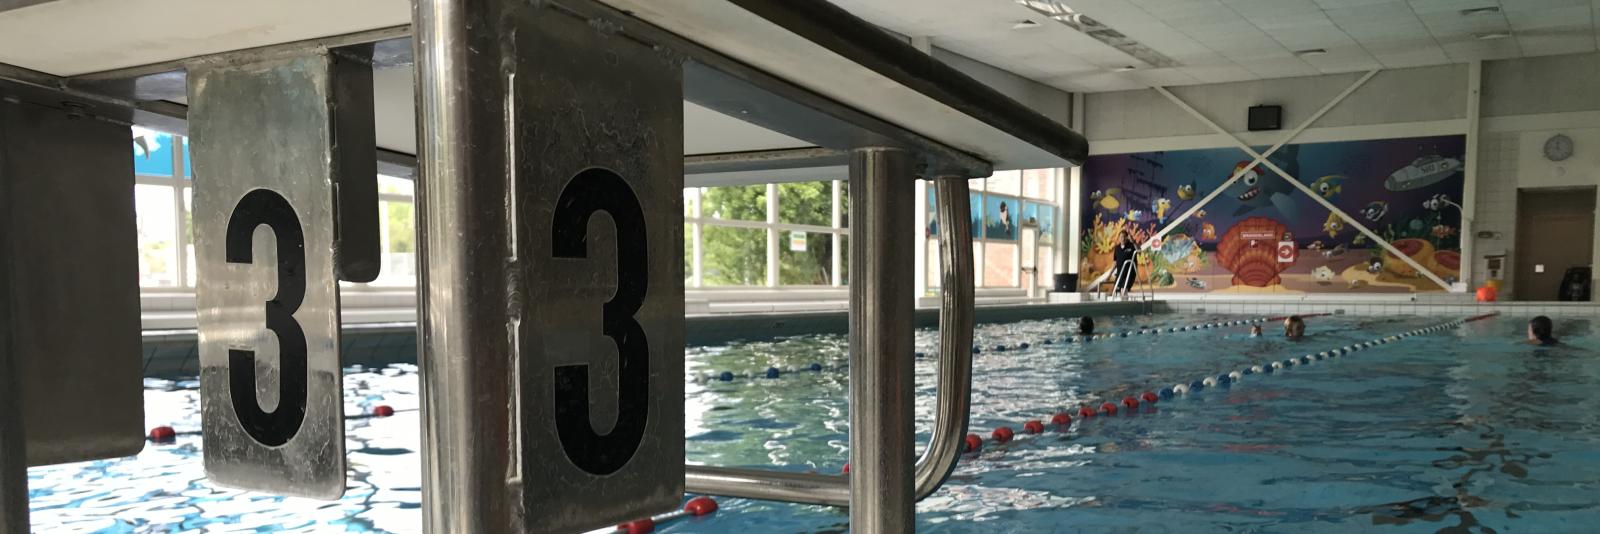 Thuis zwembroek aantrekken douchen: Haarlemse zwembaden gaan maandag open - NH Nieuws